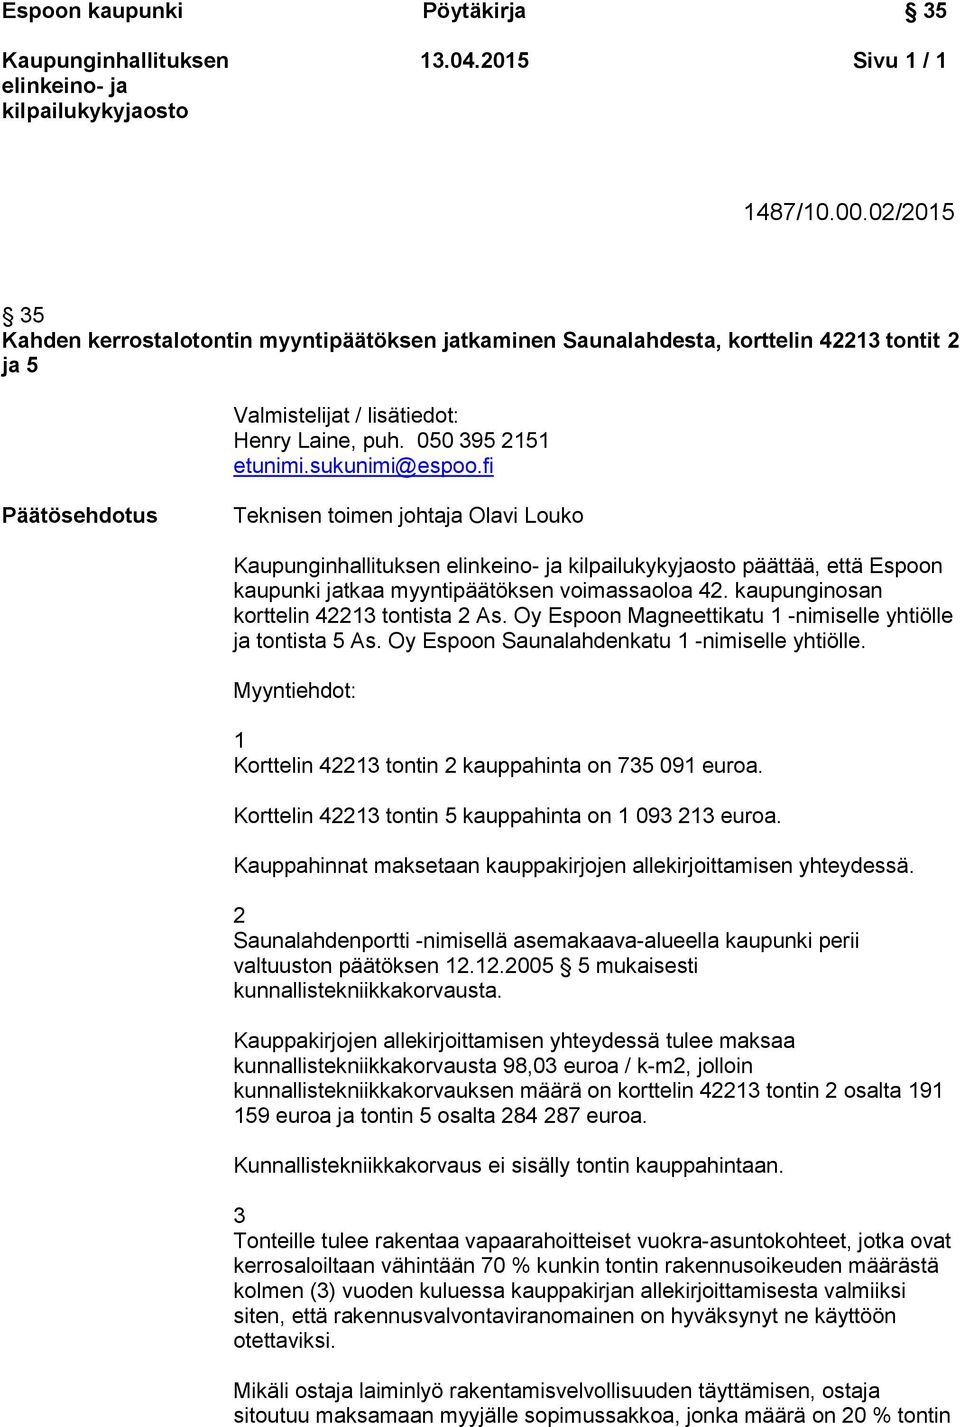 kaupunginosan korttelin 42213 tontista 2 As. Oy Espoon Magneettikatu 1 -nimiselle yhtiölle ja tontista 5 As. Oy Espoon Saunalahdenkatu 1 -nimiselle yhtiölle.